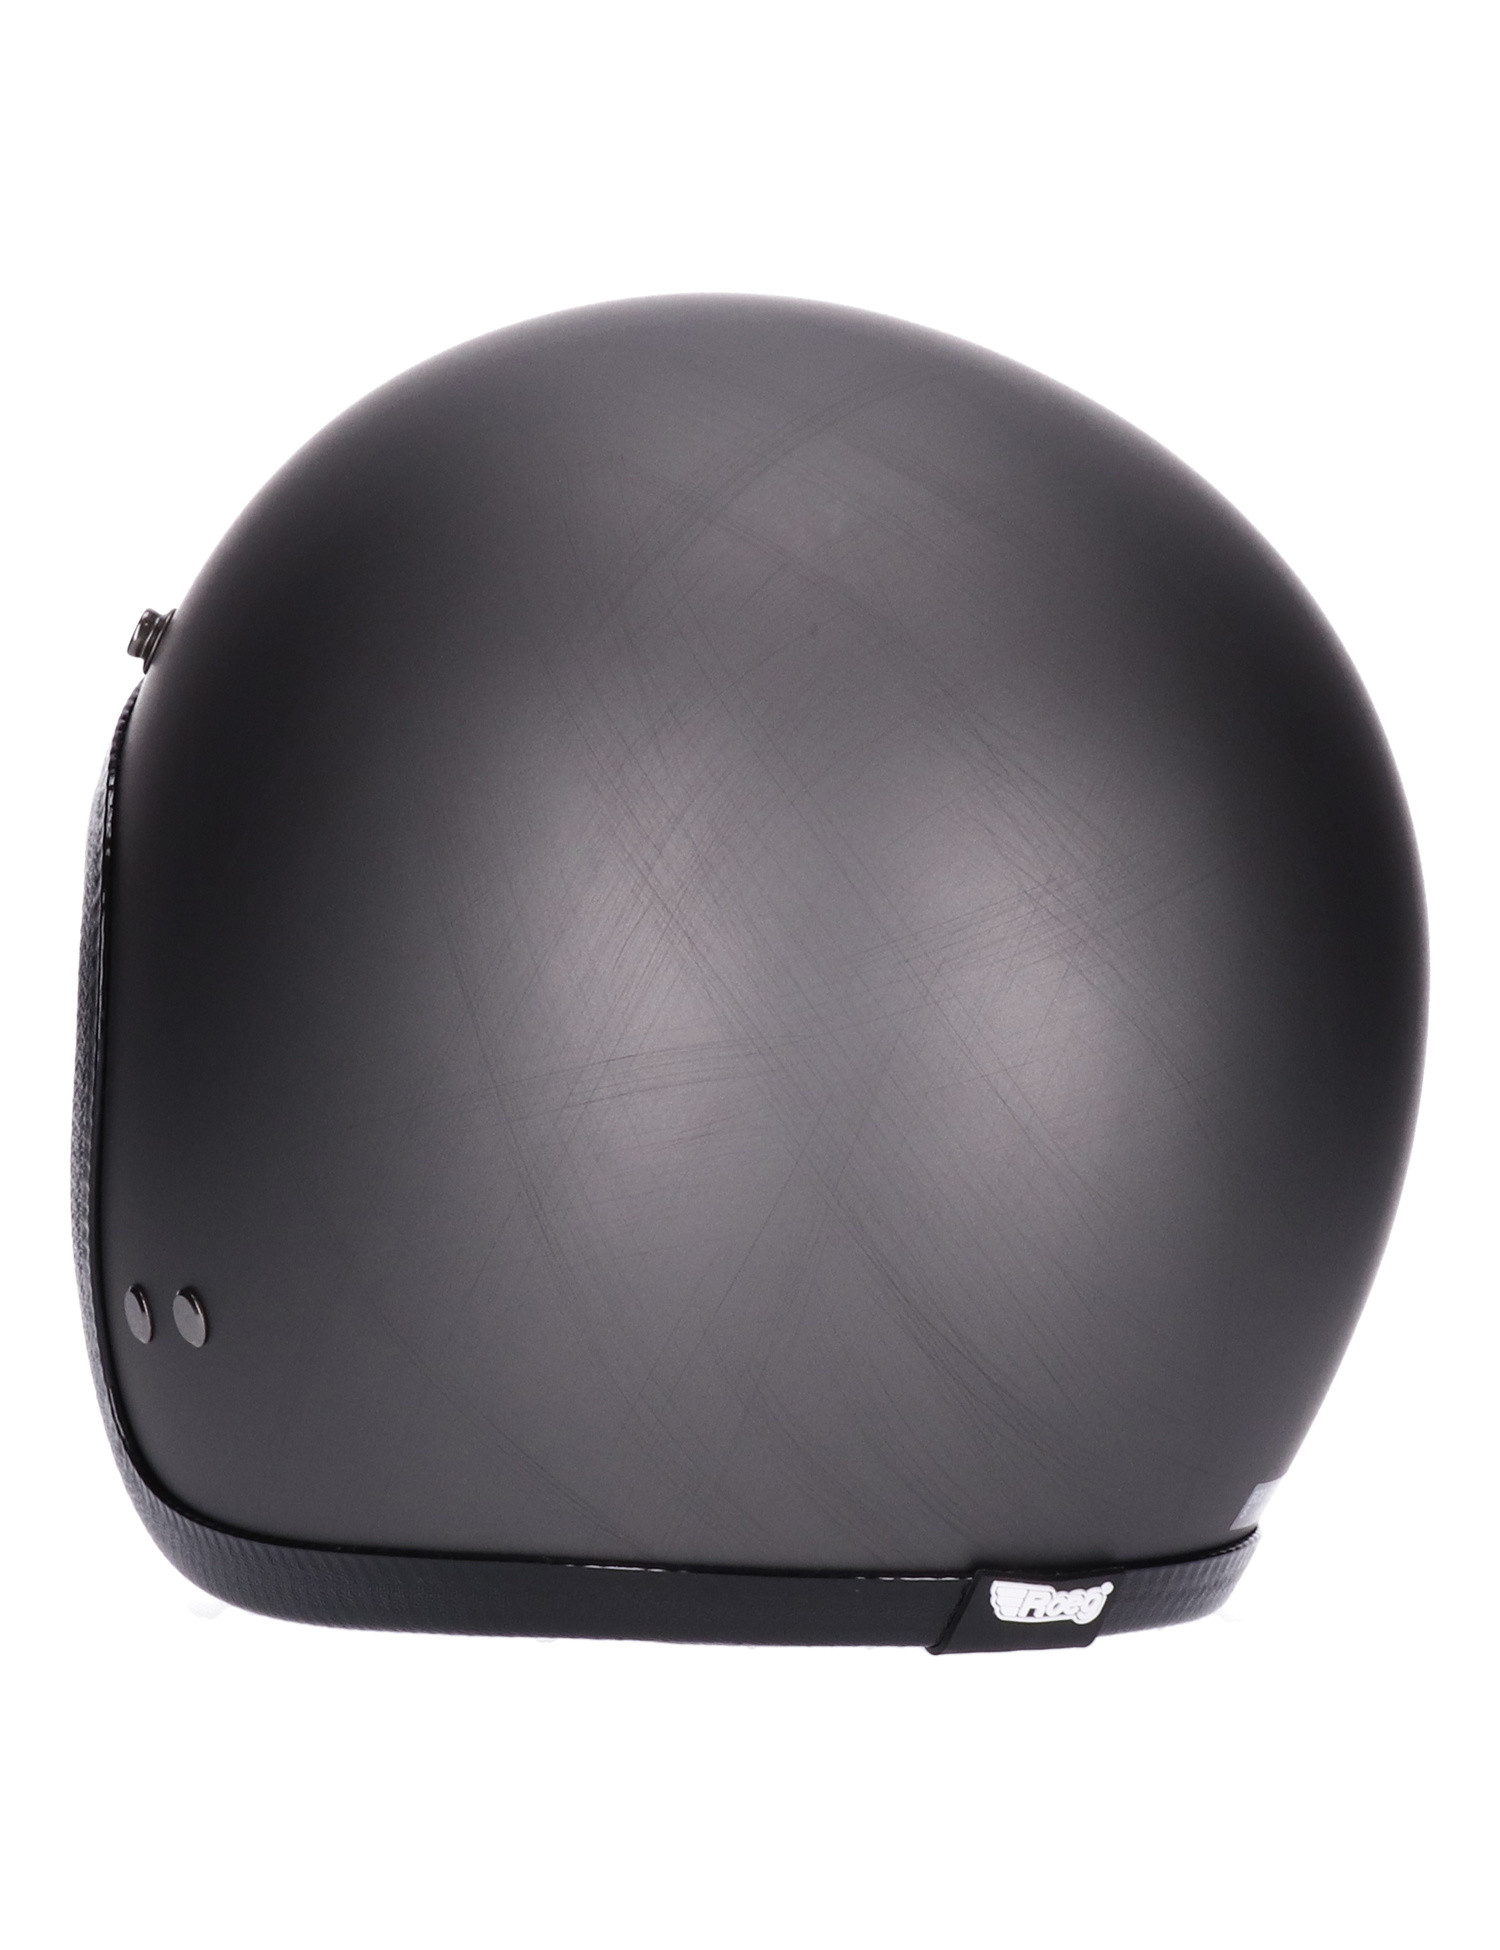 Roeg JETTson 2.0 Helmet Hobo black distressed